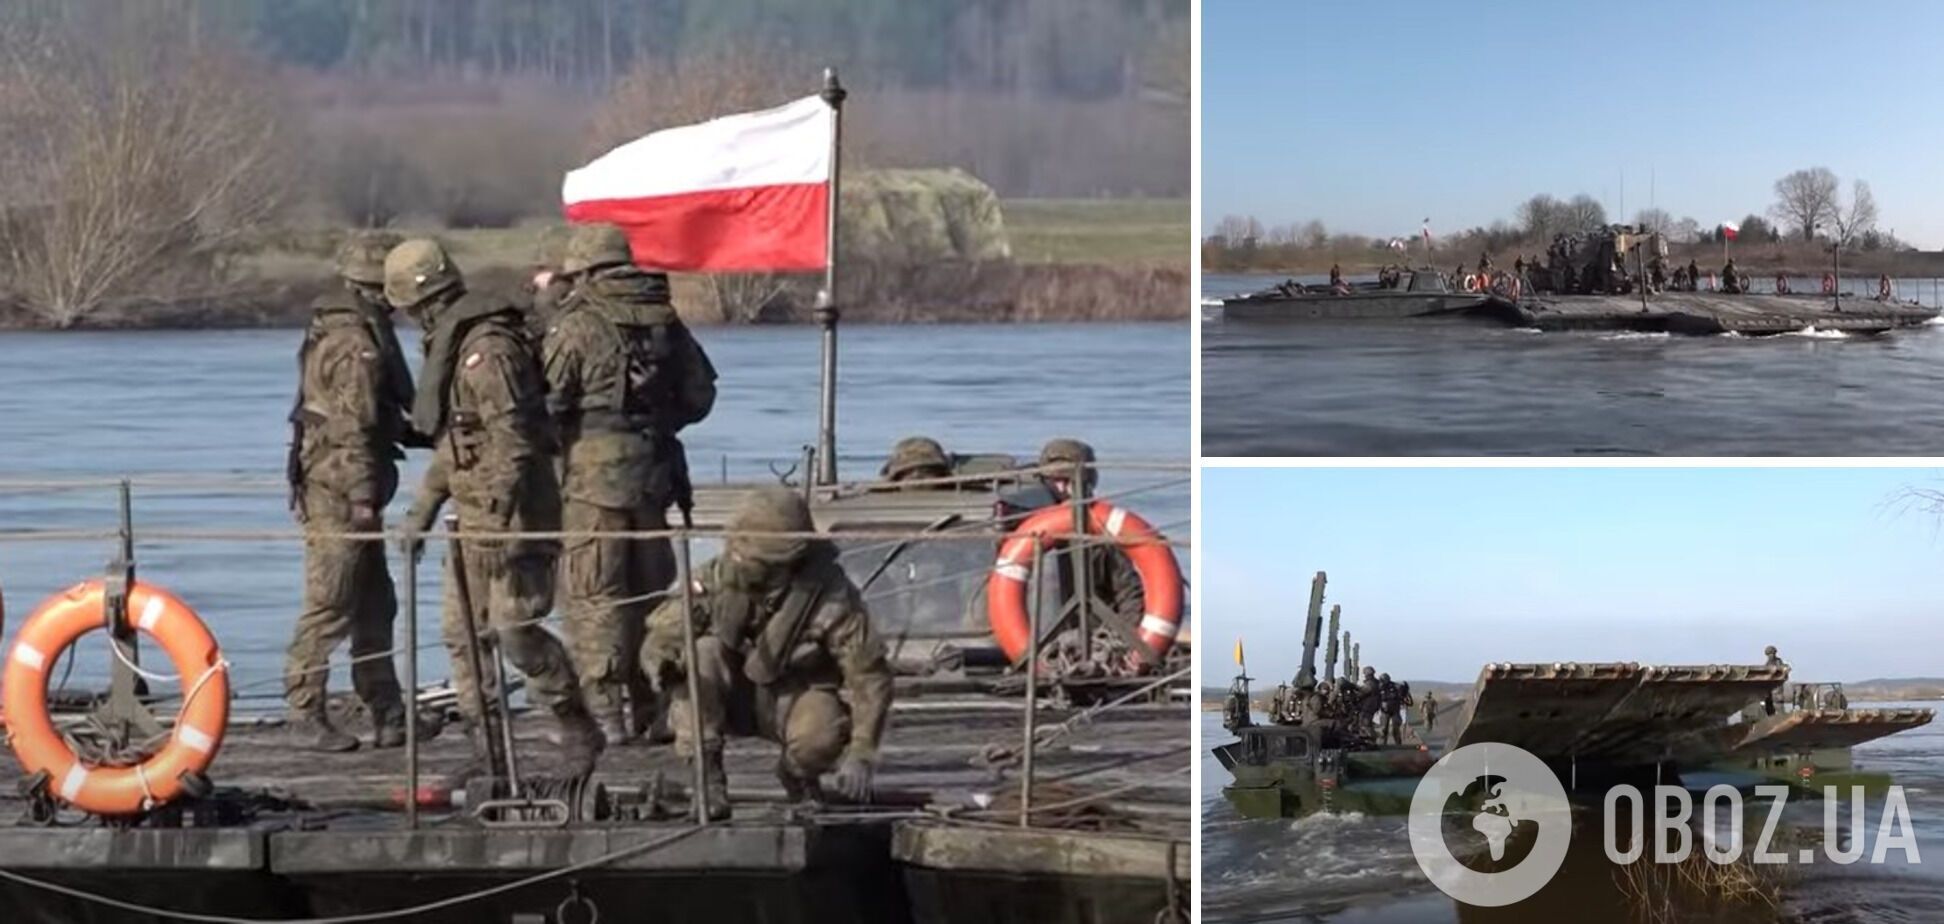 'Як бачите, мосту немає – тільки пороми':  у Польщі під час навчань НАТО застосовують 'уроки' з війни в Україні. Відео 